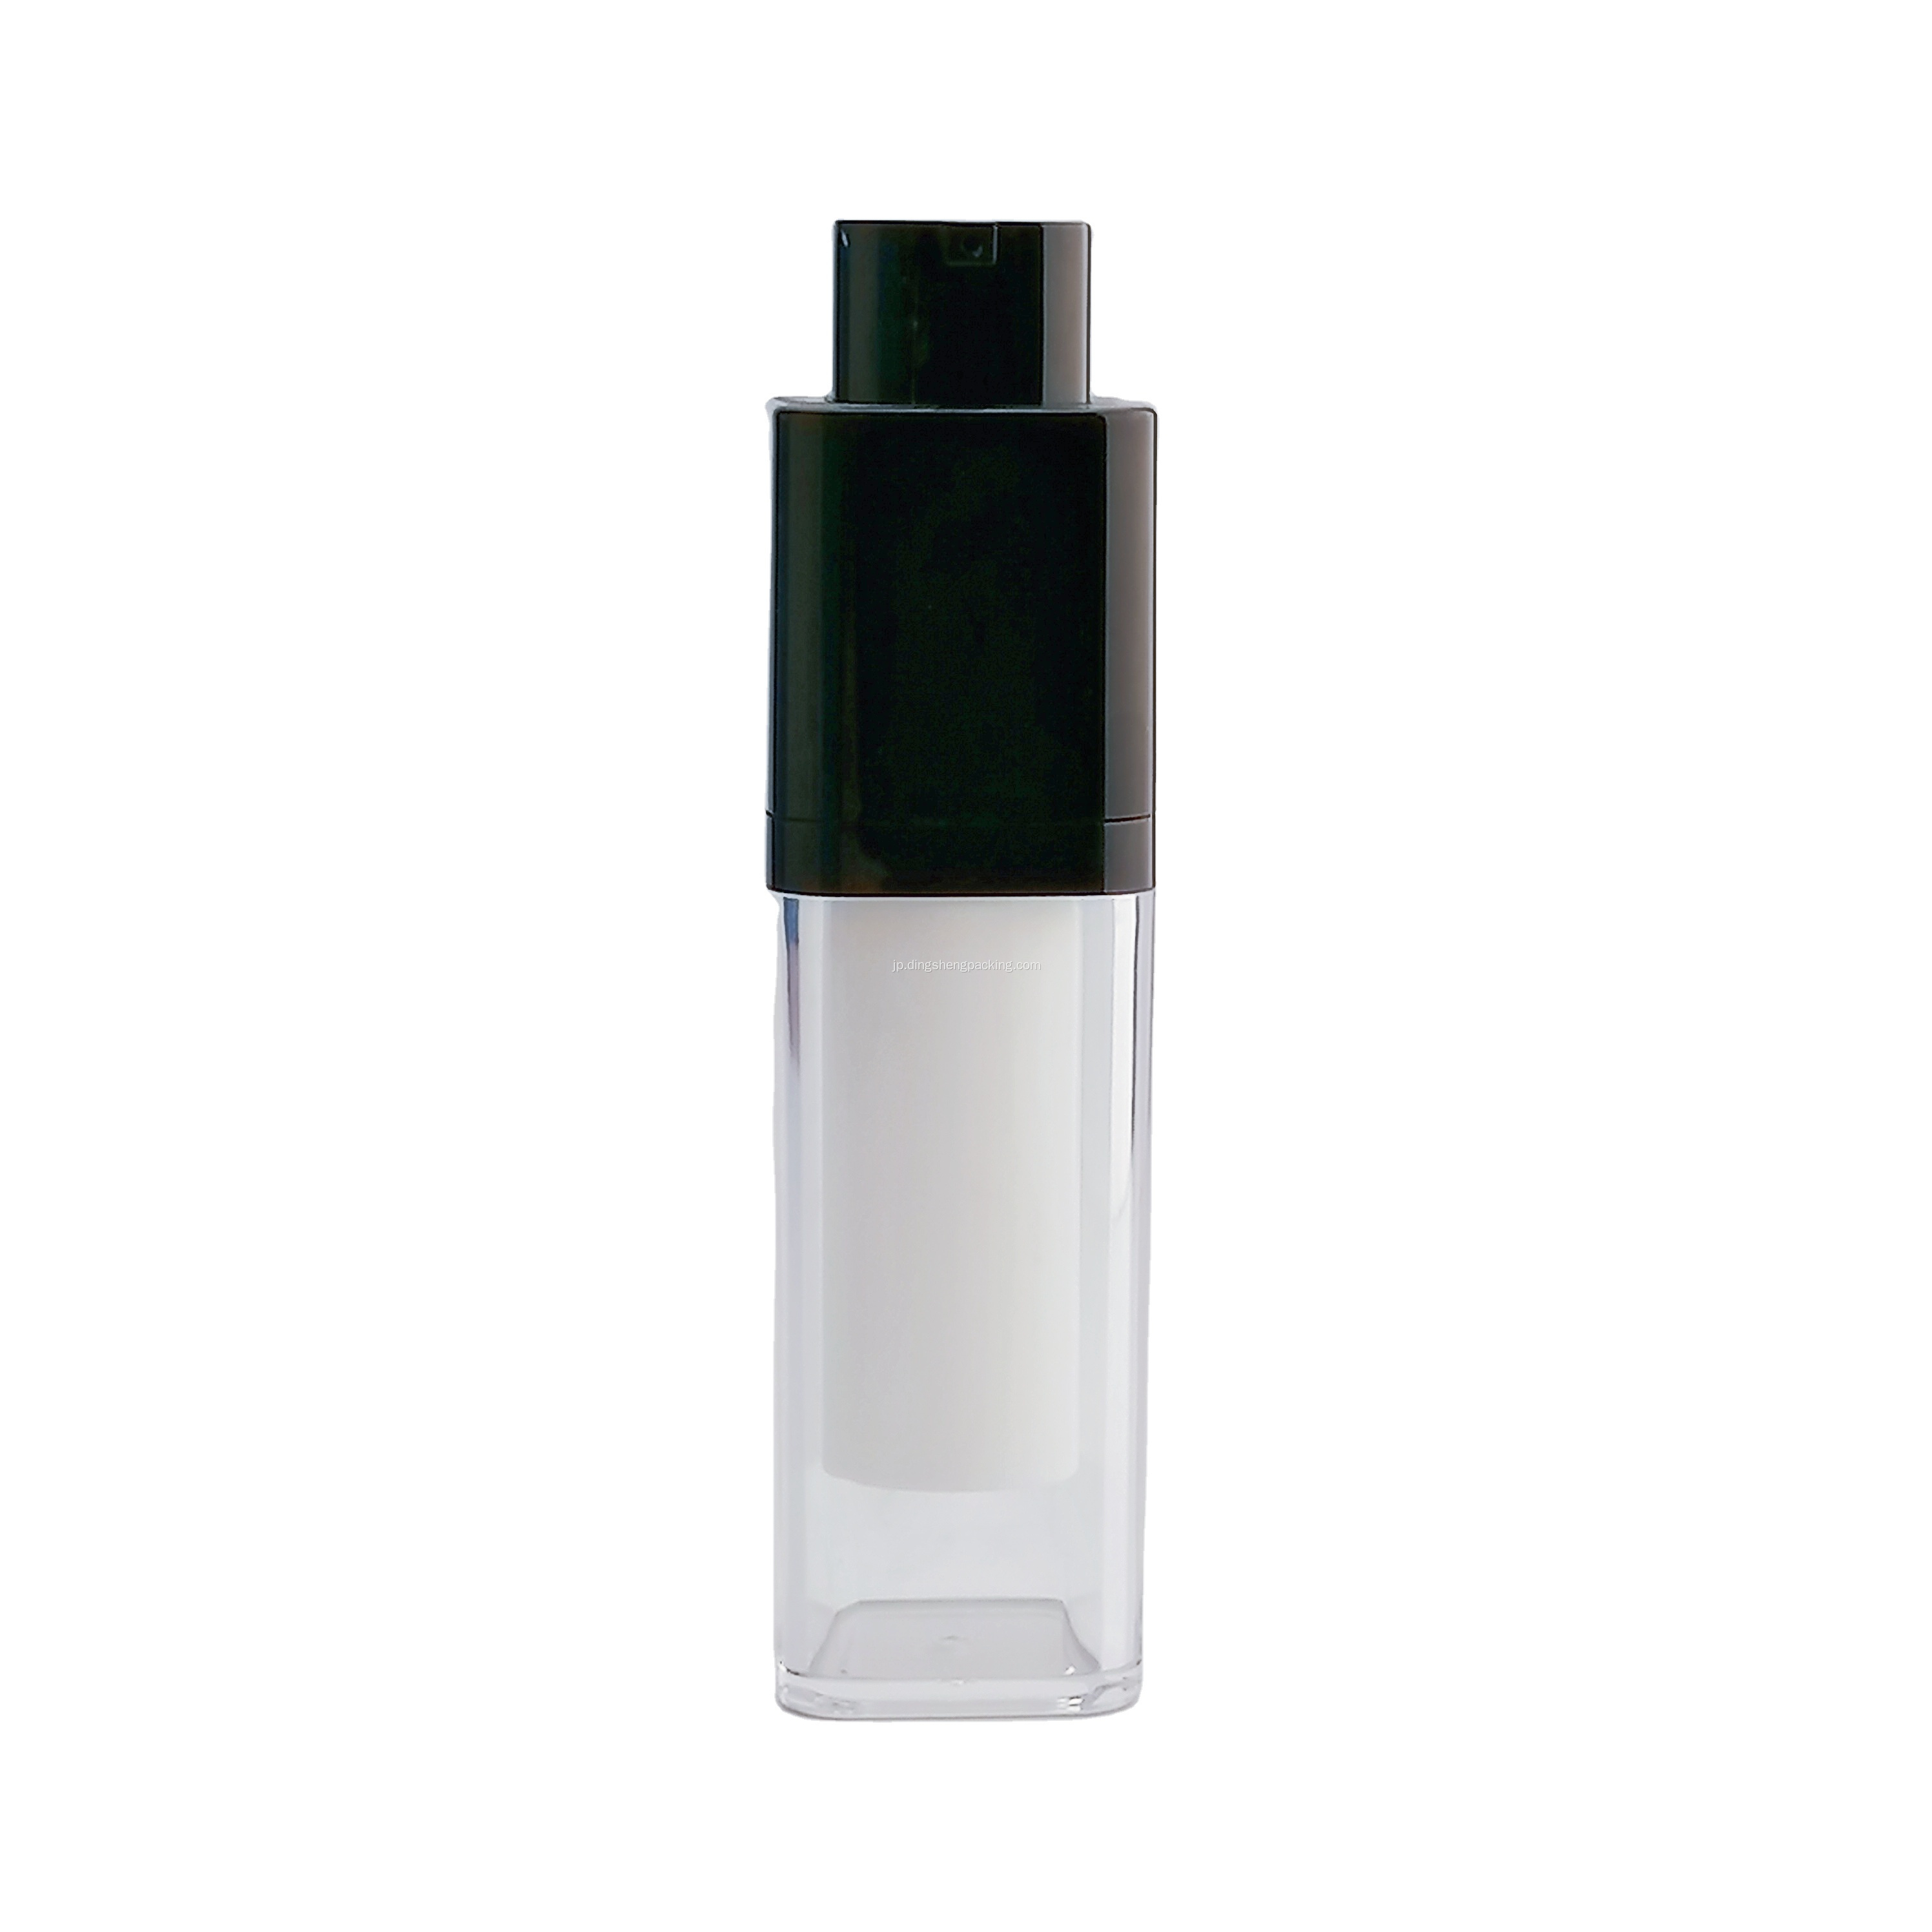 パーソナルスキンケア用の化粧品エアレスボトル二重壁ホワイトエアレスポンプボトルを回転させる